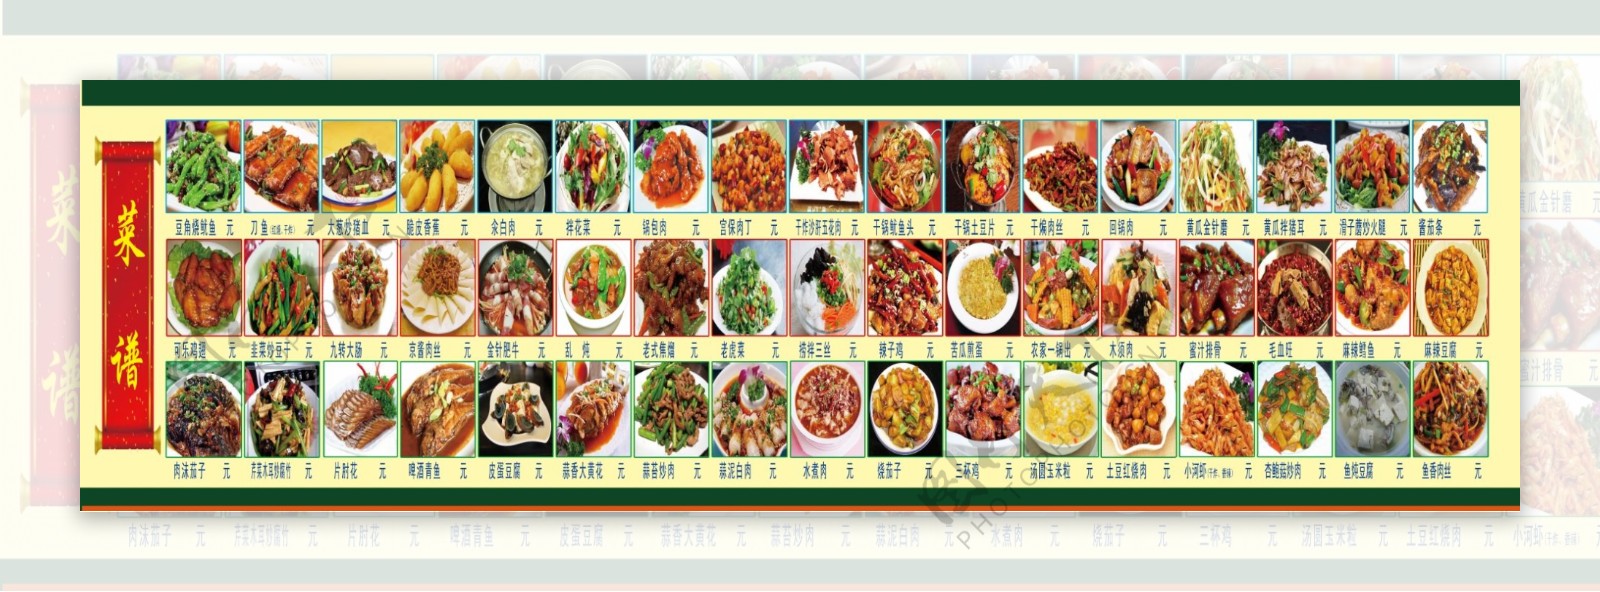 像素高图片大的最实用的菜谱